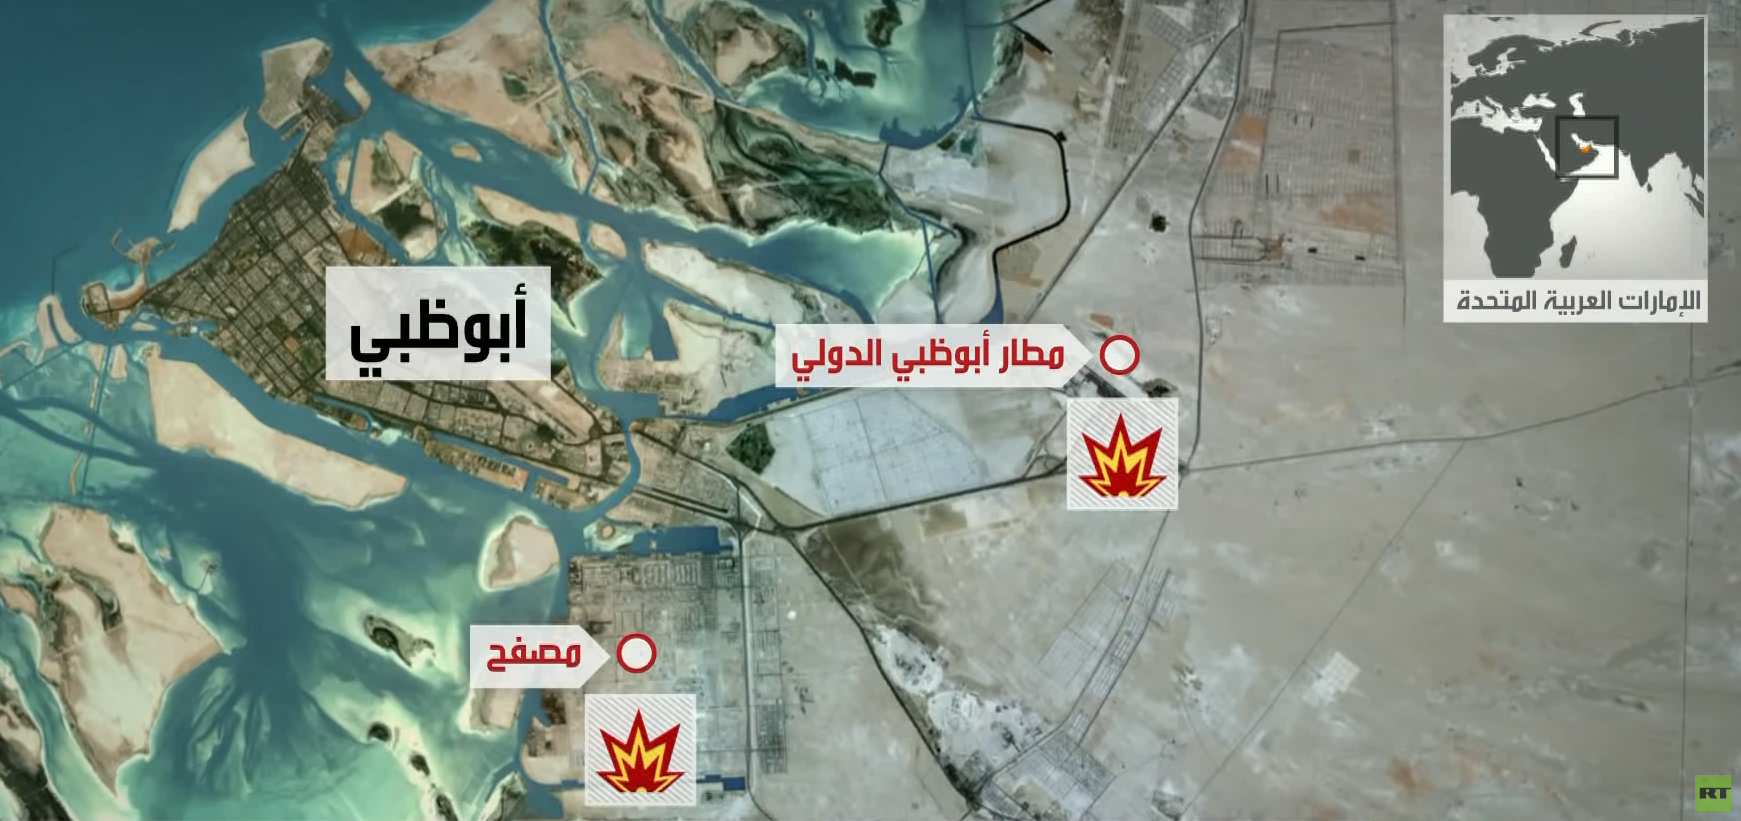 وكالة تنشر صور أقمار صناعية تظهر آثار هجوم الحوثيين على موقع نفطي في أبو ظبي (صور)